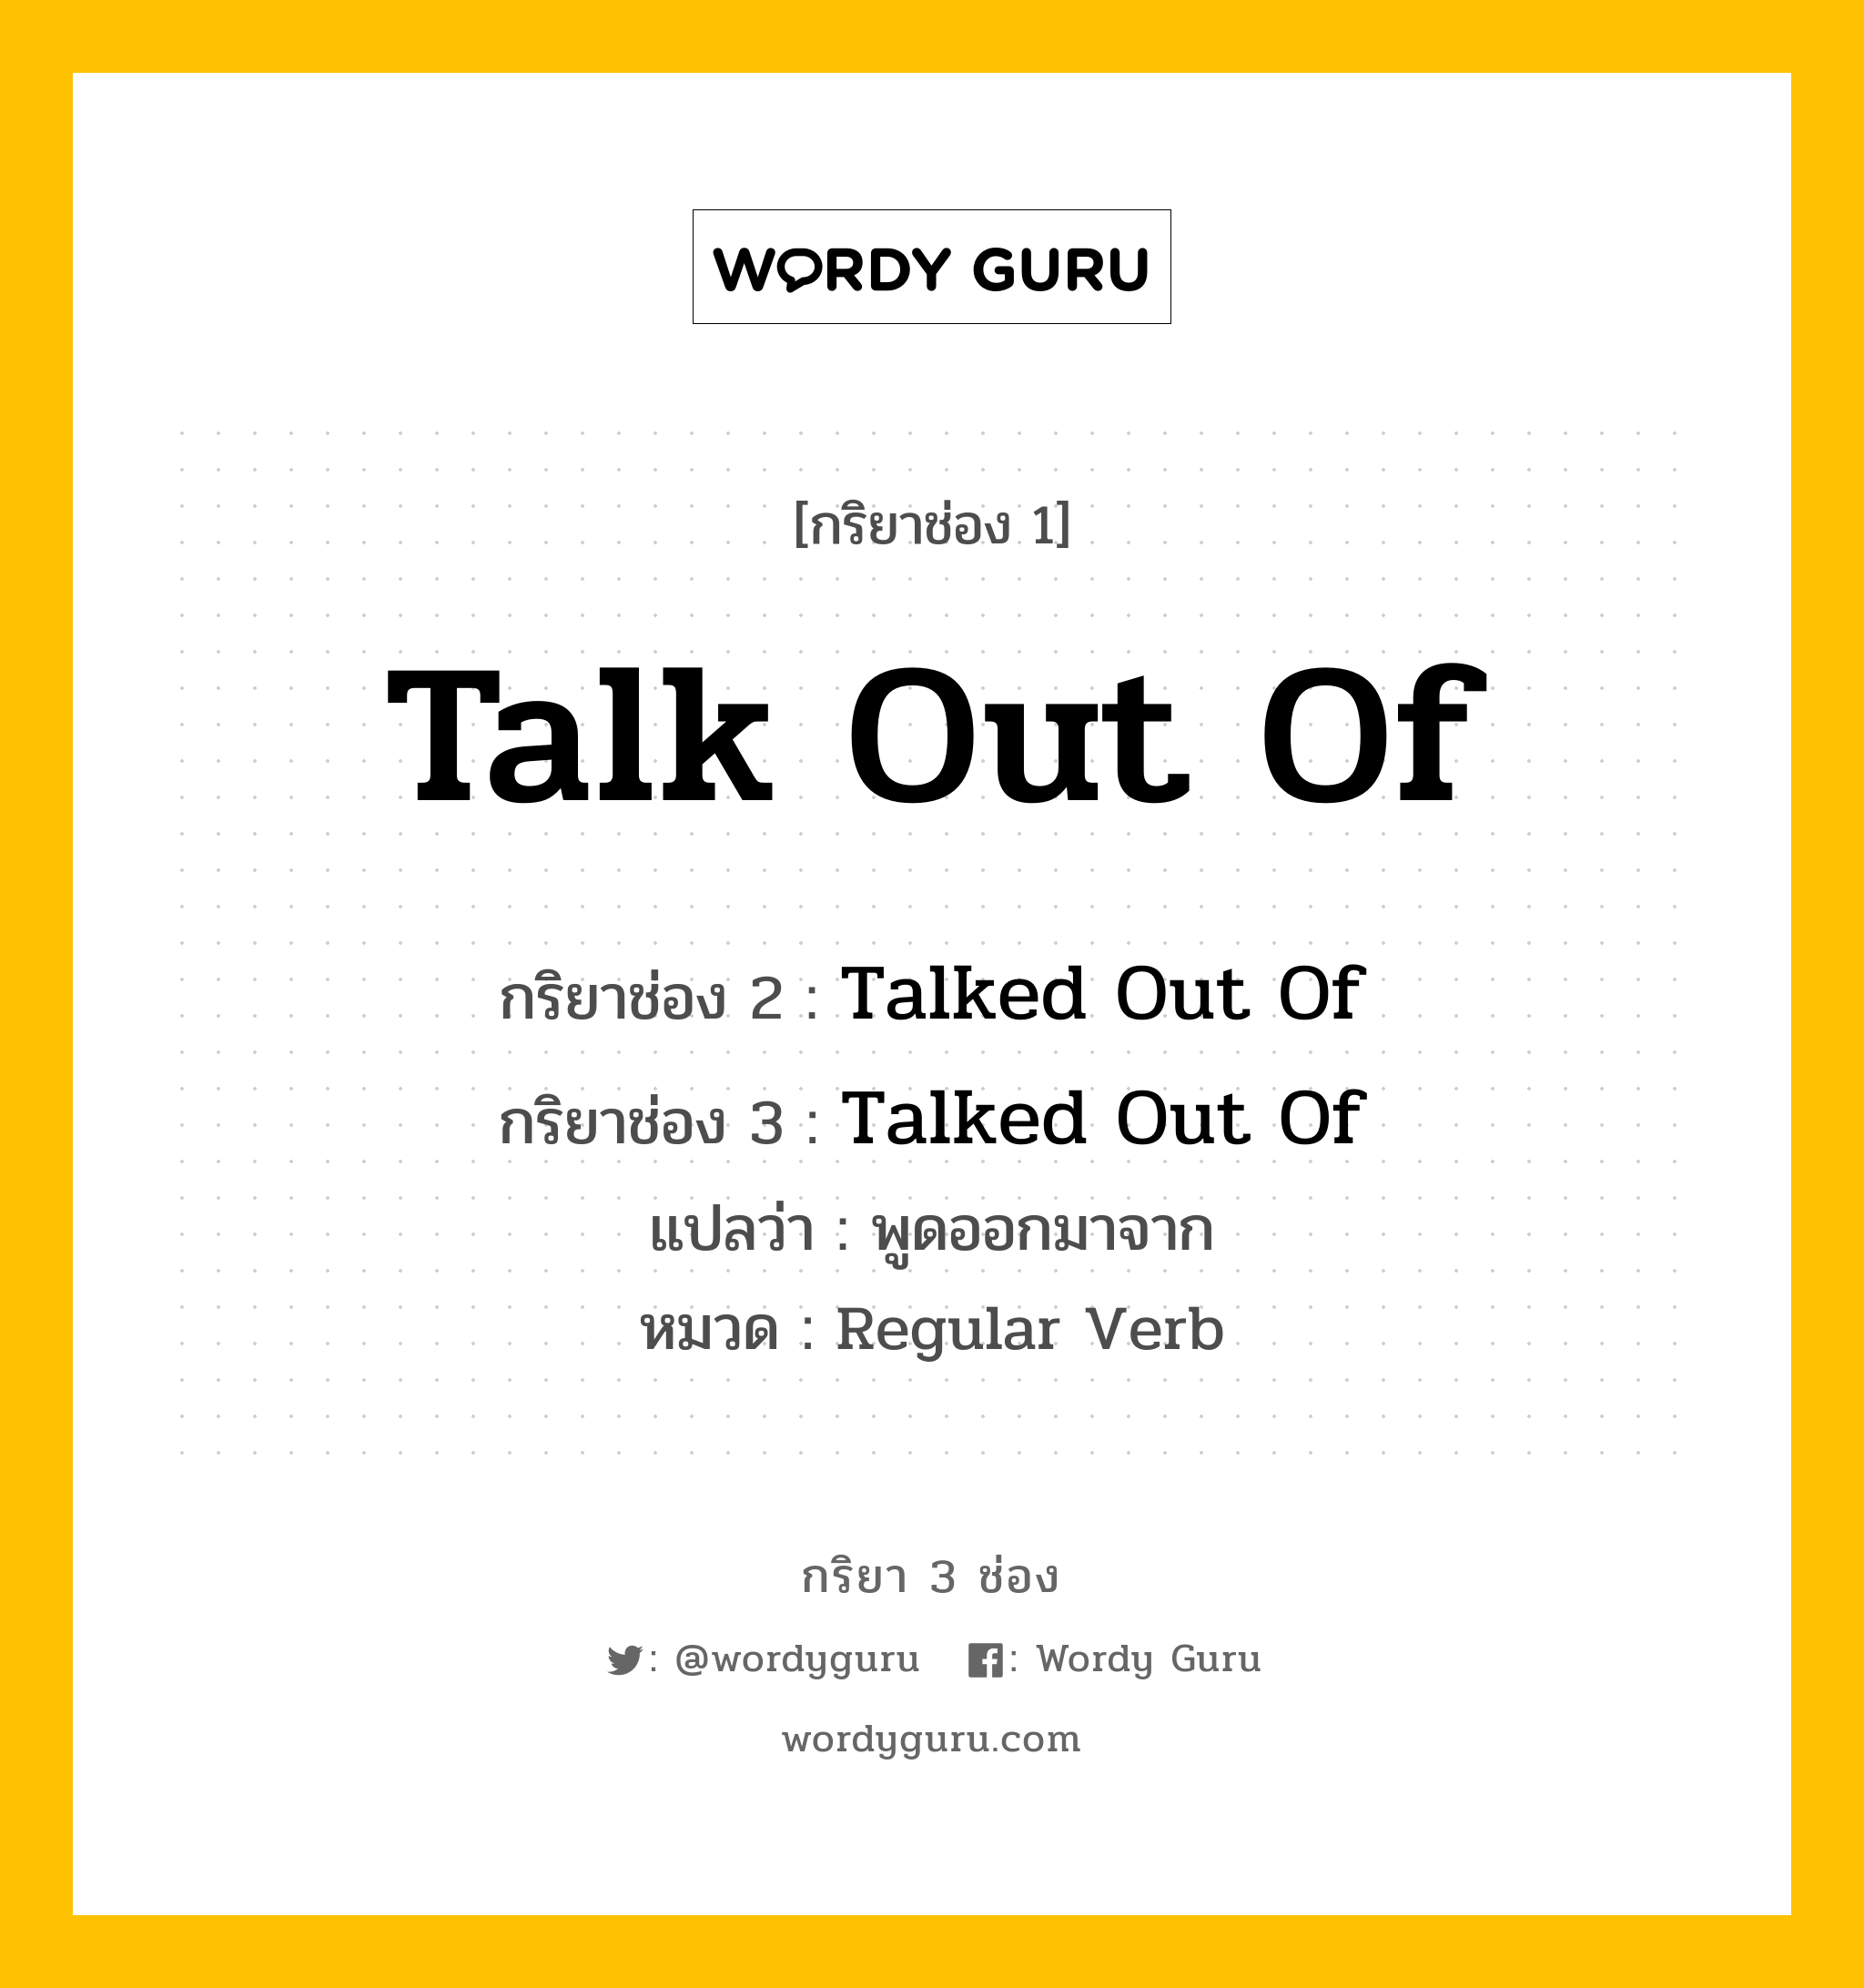 กริยา 3 ช่อง ของ Talk Out Of คืออะไร? มาดูคำอ่าน คำแปลกันเลย, กริยาช่อง 1 Talk Out Of กริยาช่อง 2 Talked Out Of กริยาช่อง 3 Talked Out Of แปลว่า พูดออกมาจาก หมวด Regular Verb หมวด Regular Verb